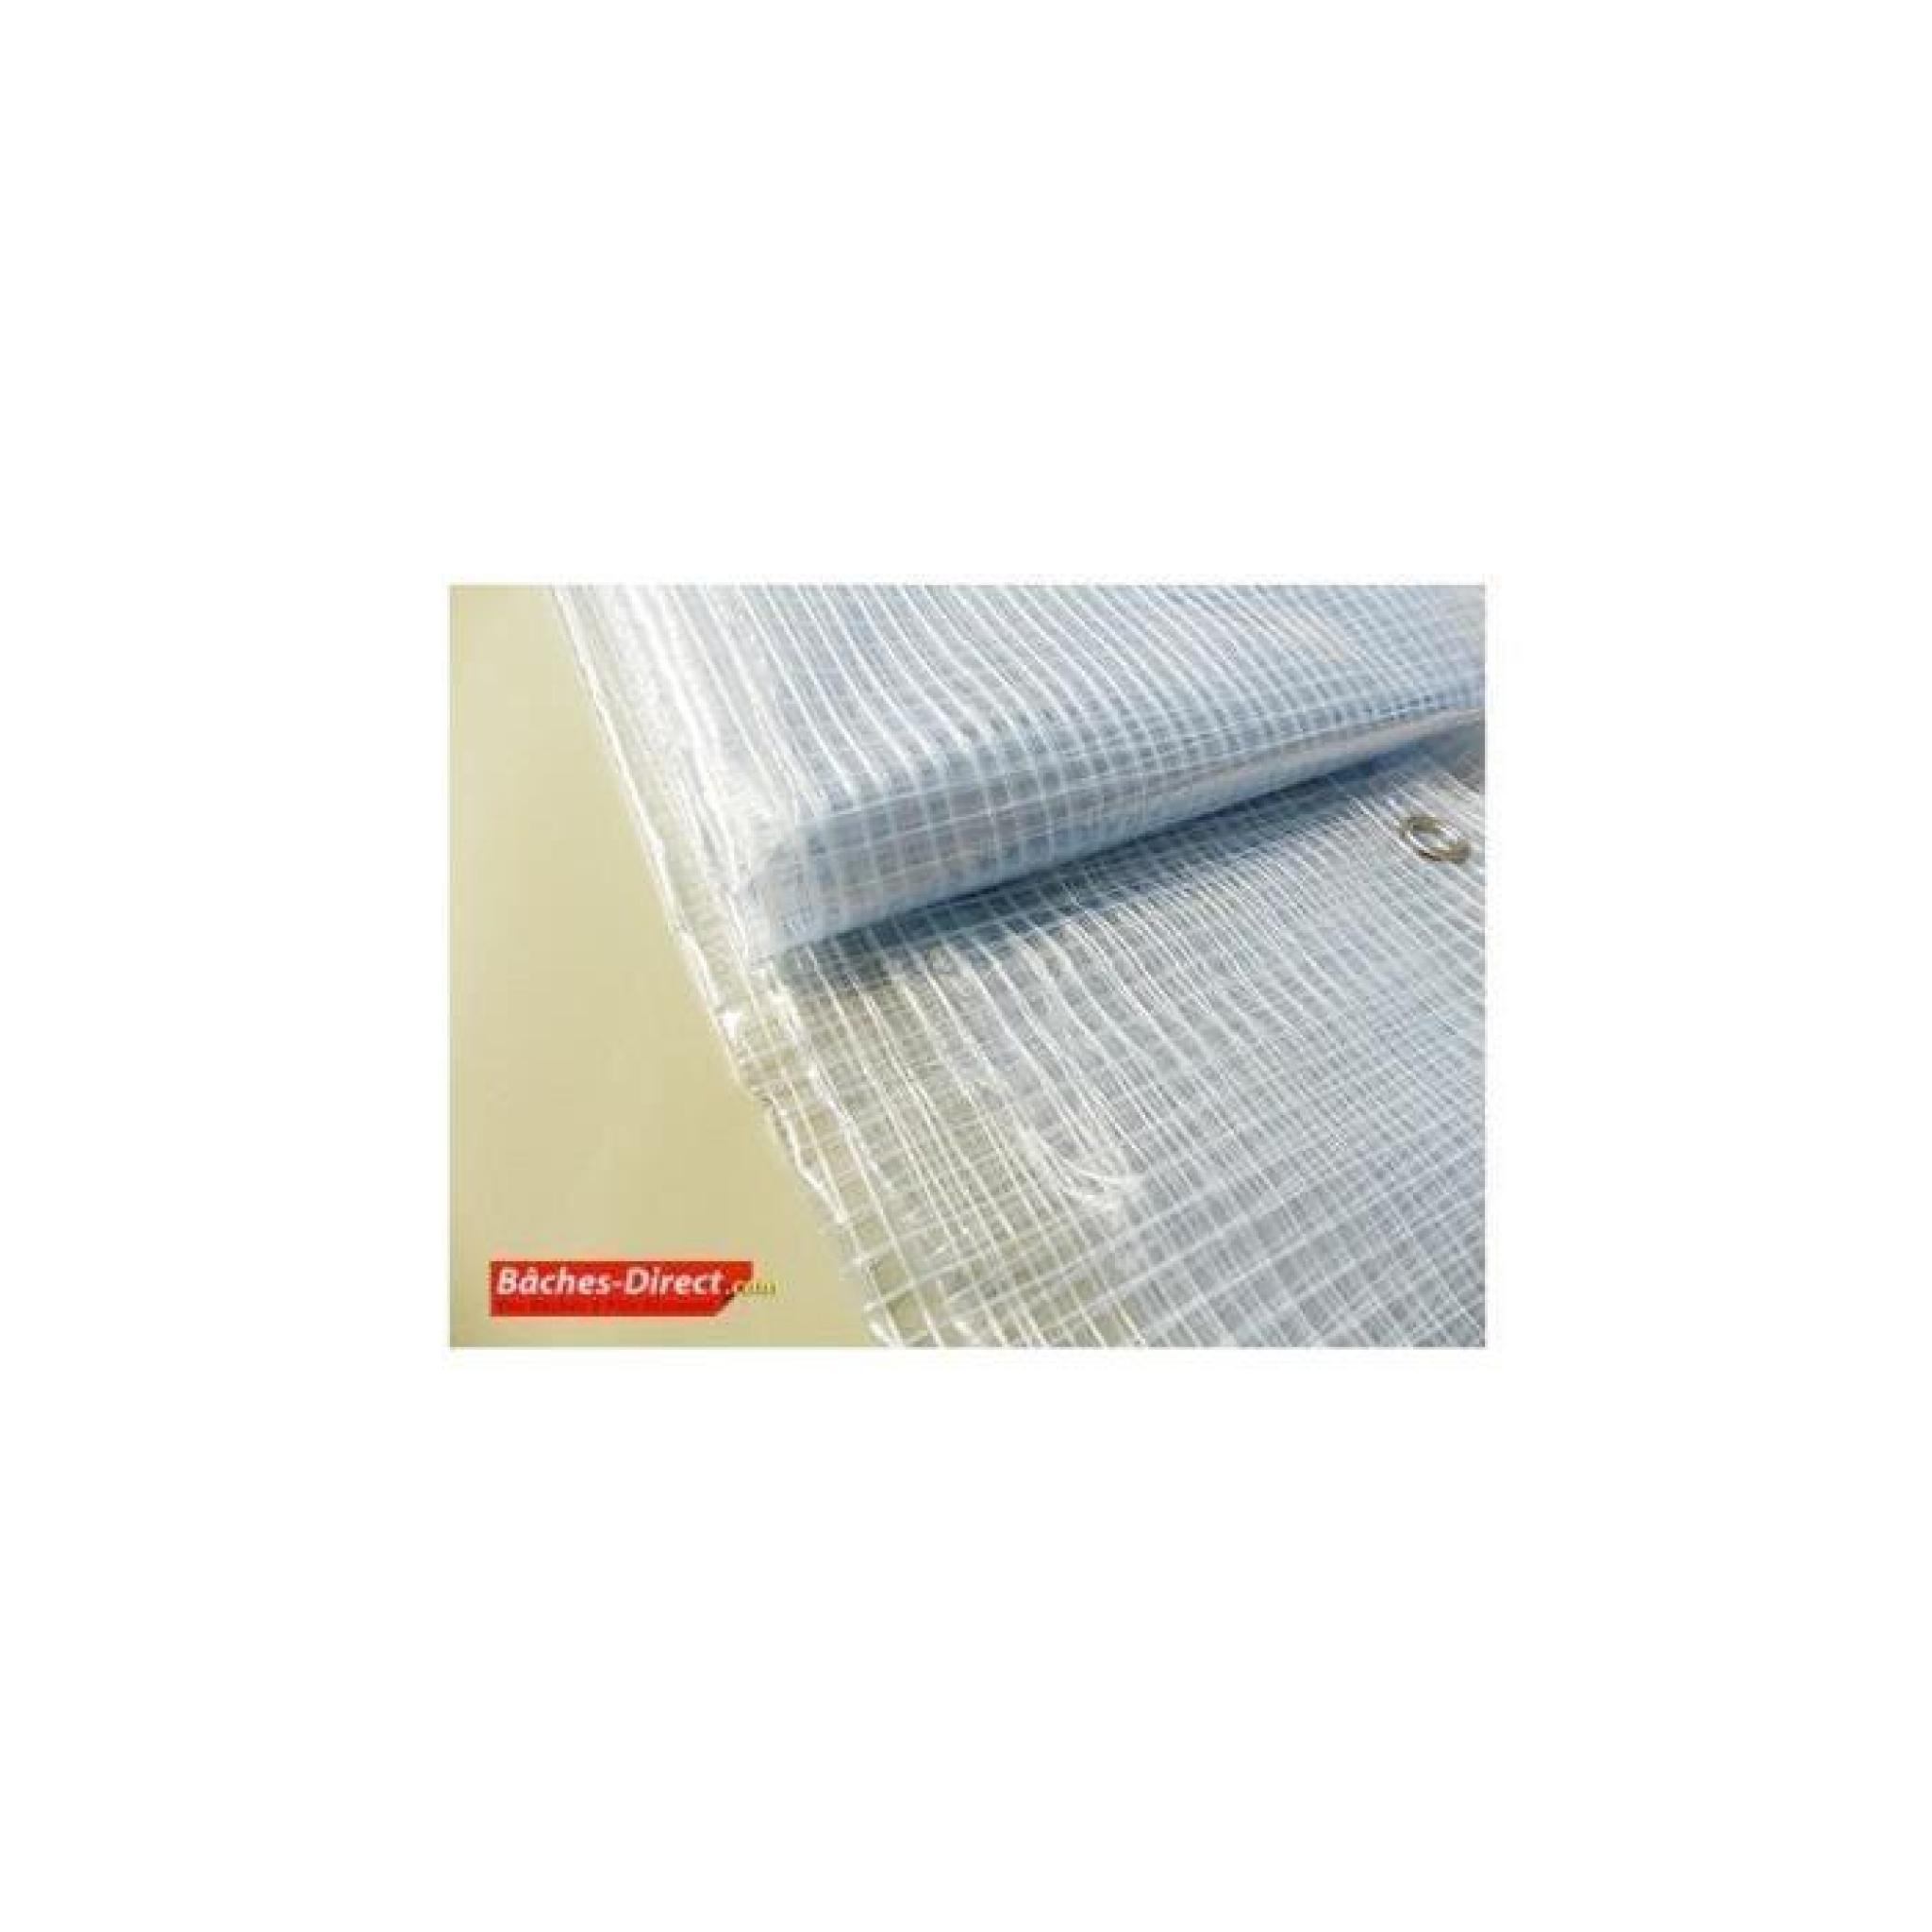 BACHES DIRECT - Bâche Pergola 400 g/m² - 3.8 x 6 m - bache transparente pour toile de pergola - bache imperméable Transparente Armée pas cher